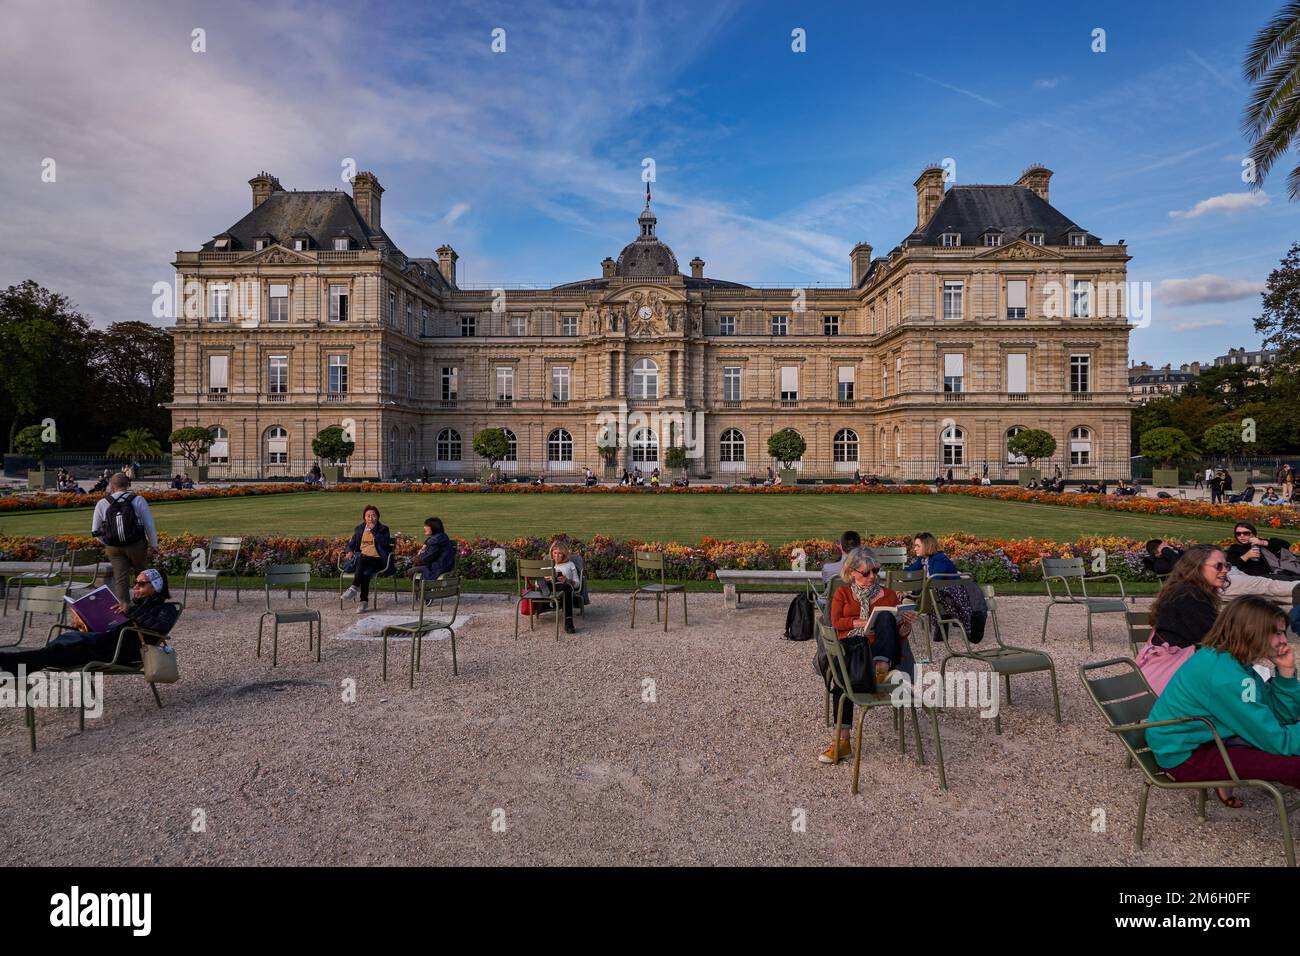 Le Palais du Luxembourg dans le jardin du Luxembourg ou les Jardins du Luxembourg à Paris, France. Le Palais de Luxembourg a été construit à l'origine Banque D'Images